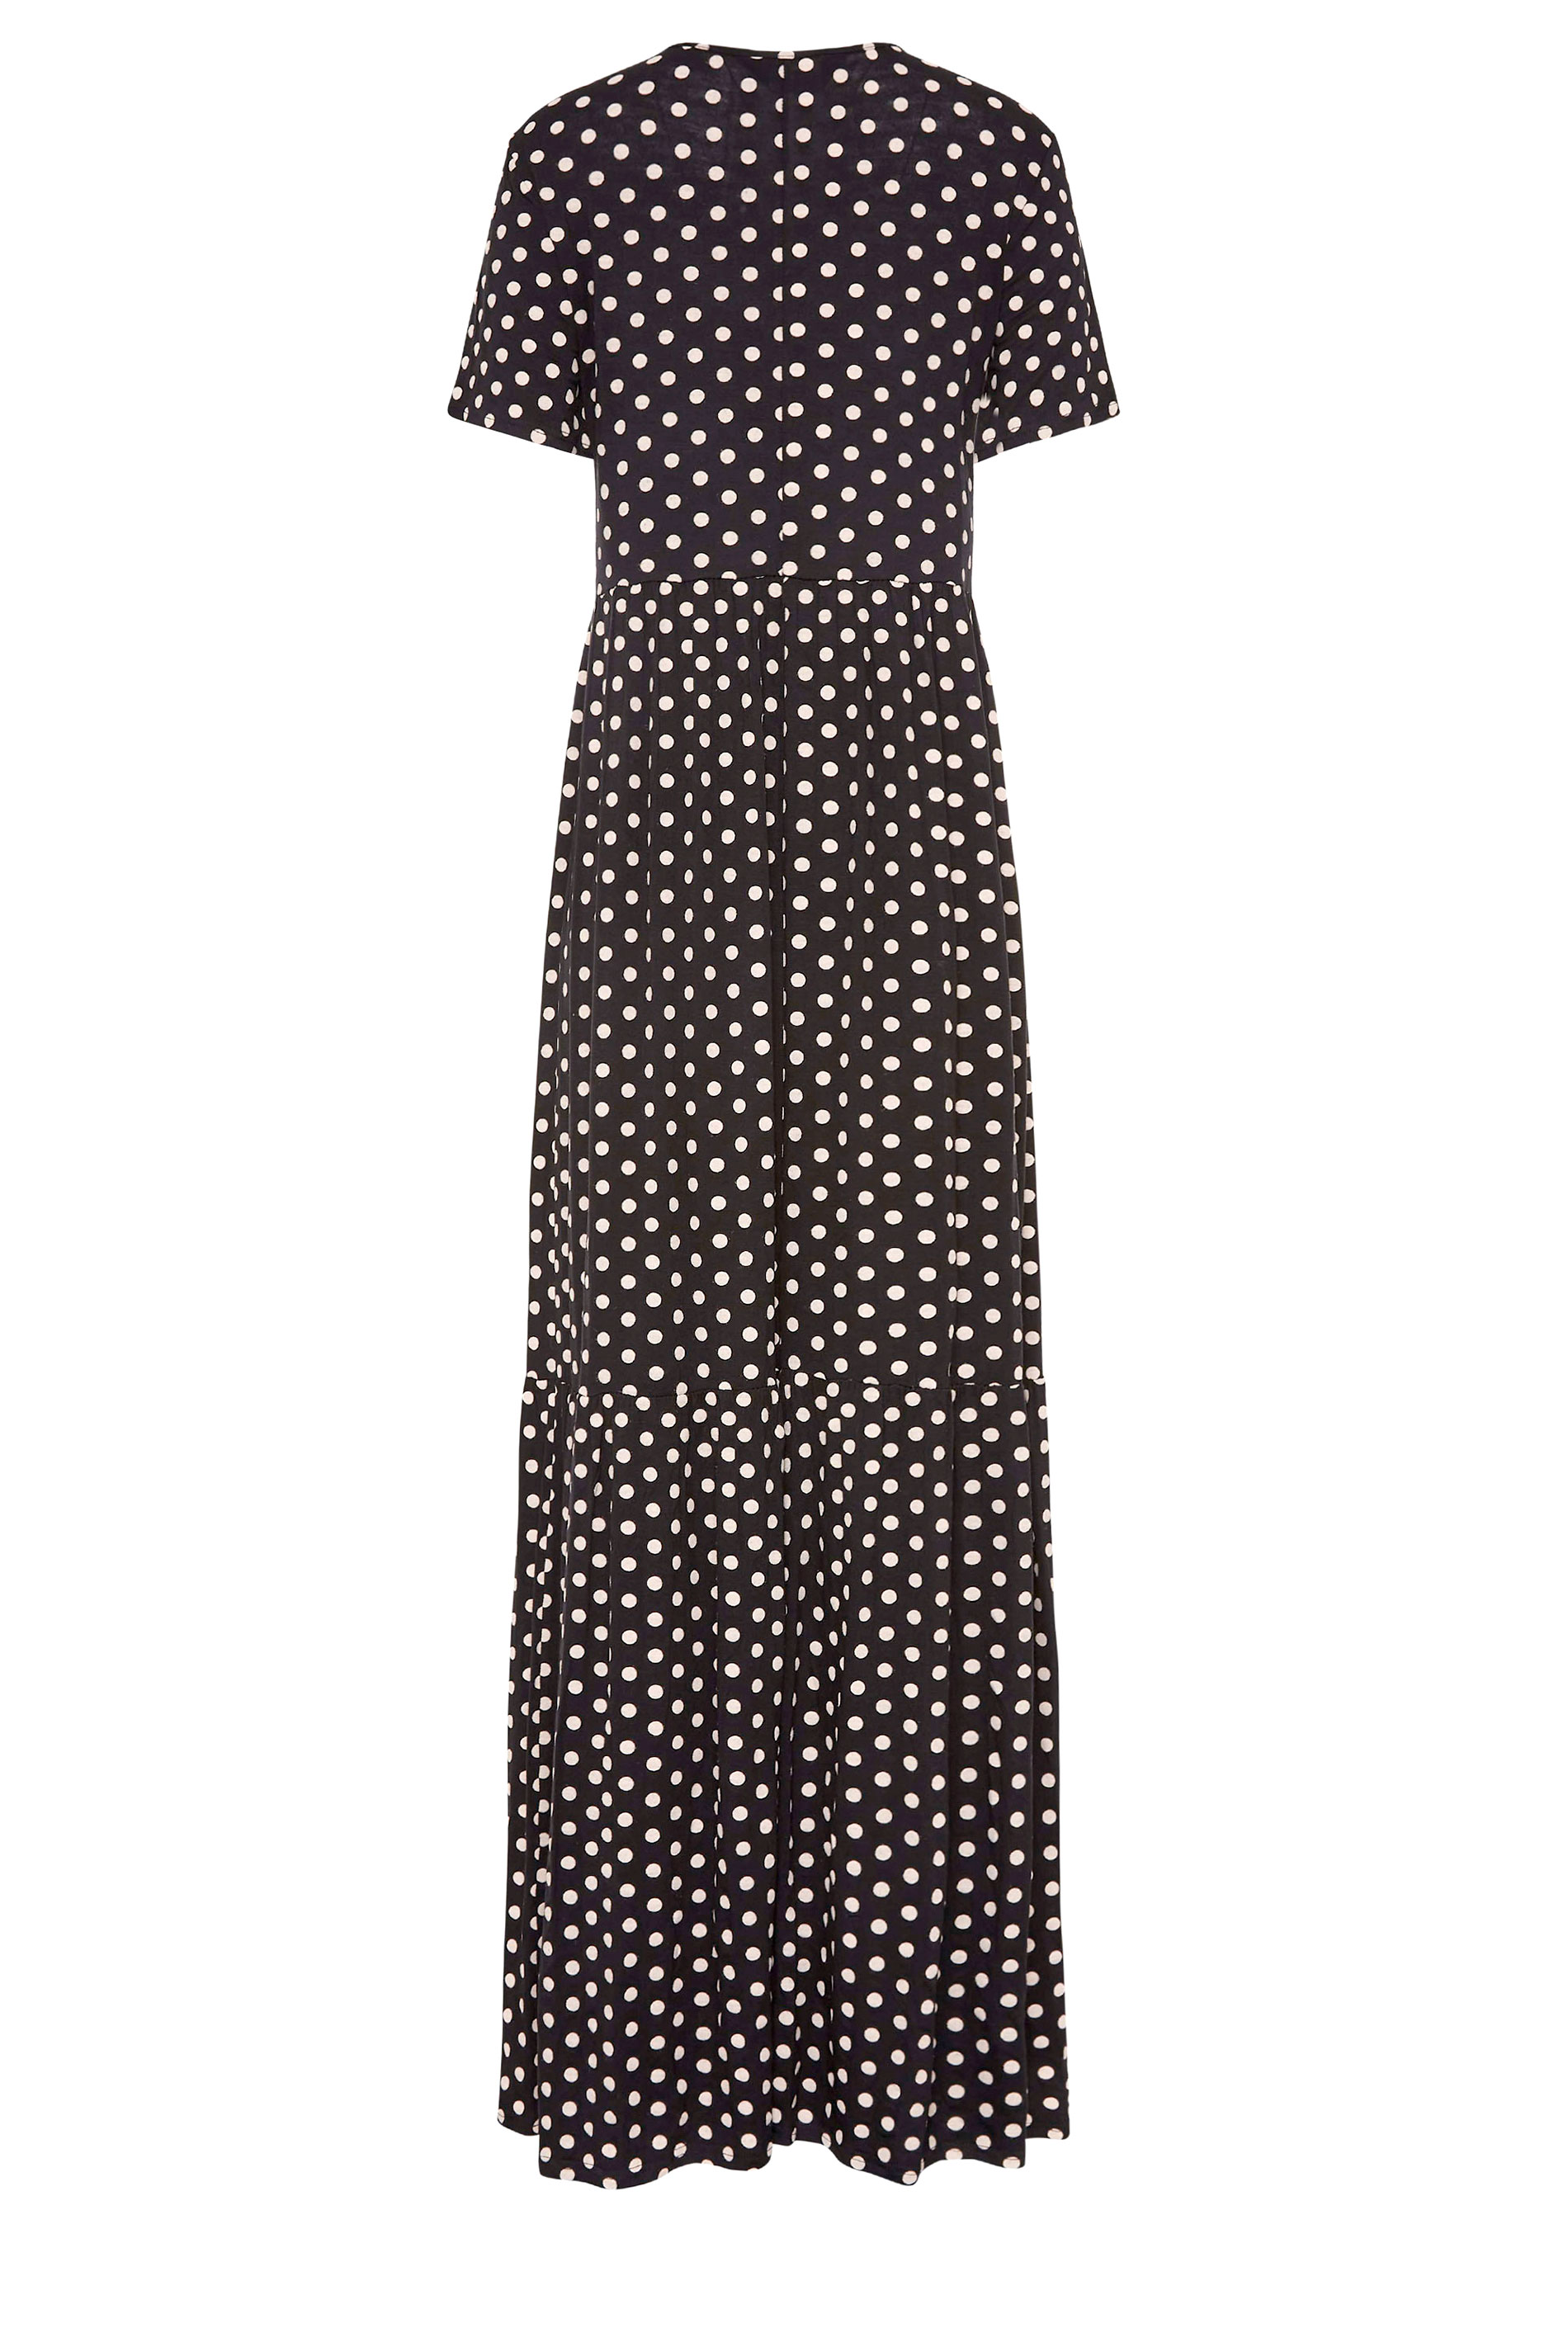 LTS Black Spot Tiered Maxi Dress | Long Tall Sally